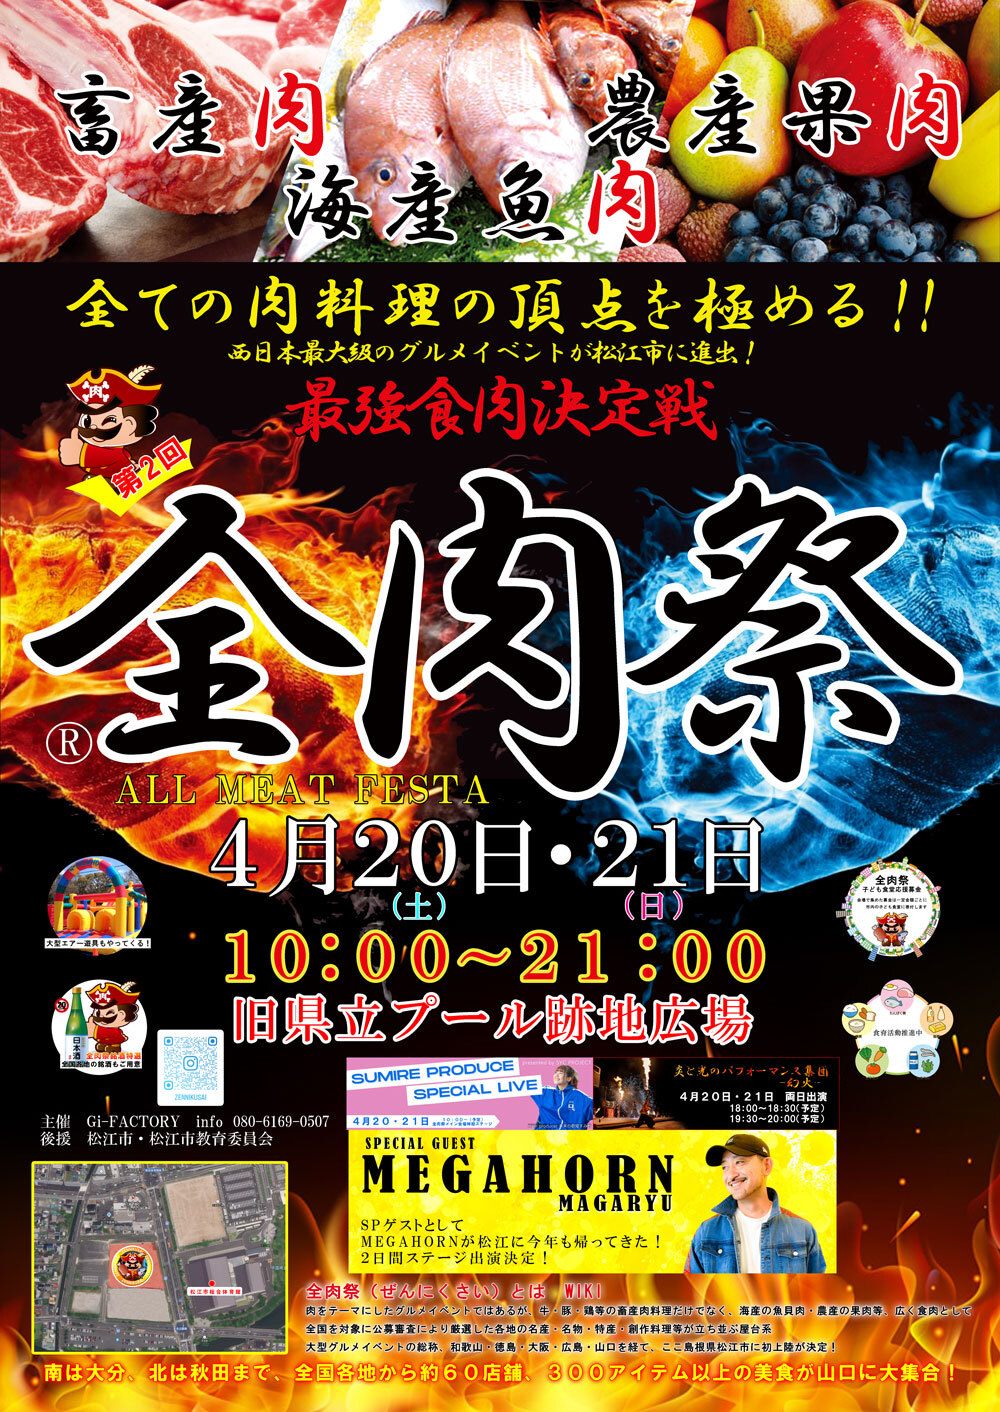 西日本最大級のグルメイベント「全肉祭」
4月20日・21日、島根県松江市で第2回が開催決定